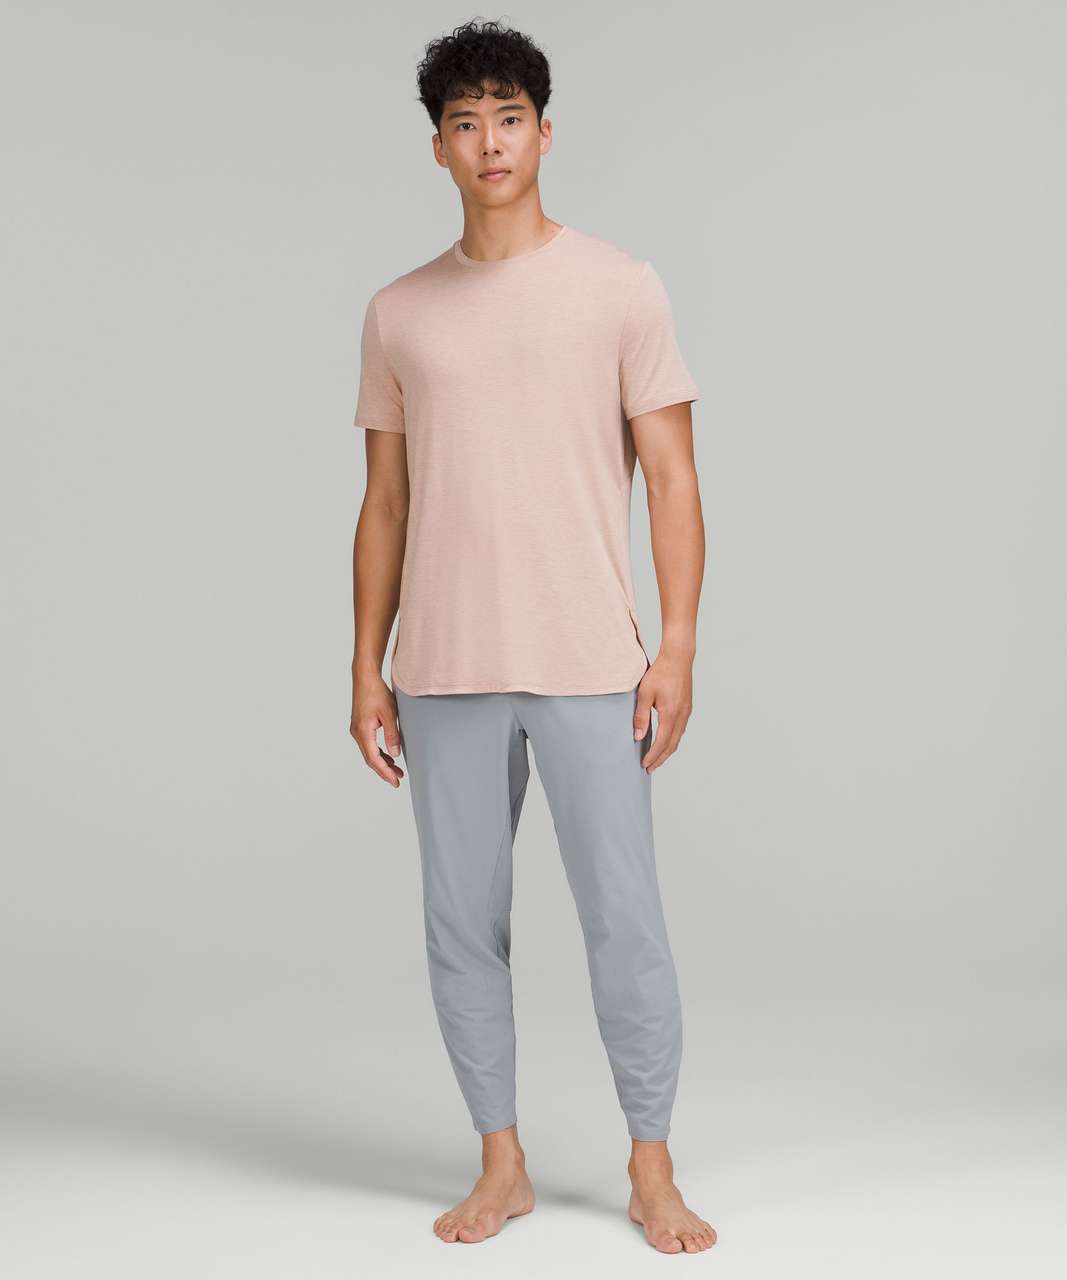 Lululemon Balancer Short Sleeve Shirt - Heathered Pink Clay